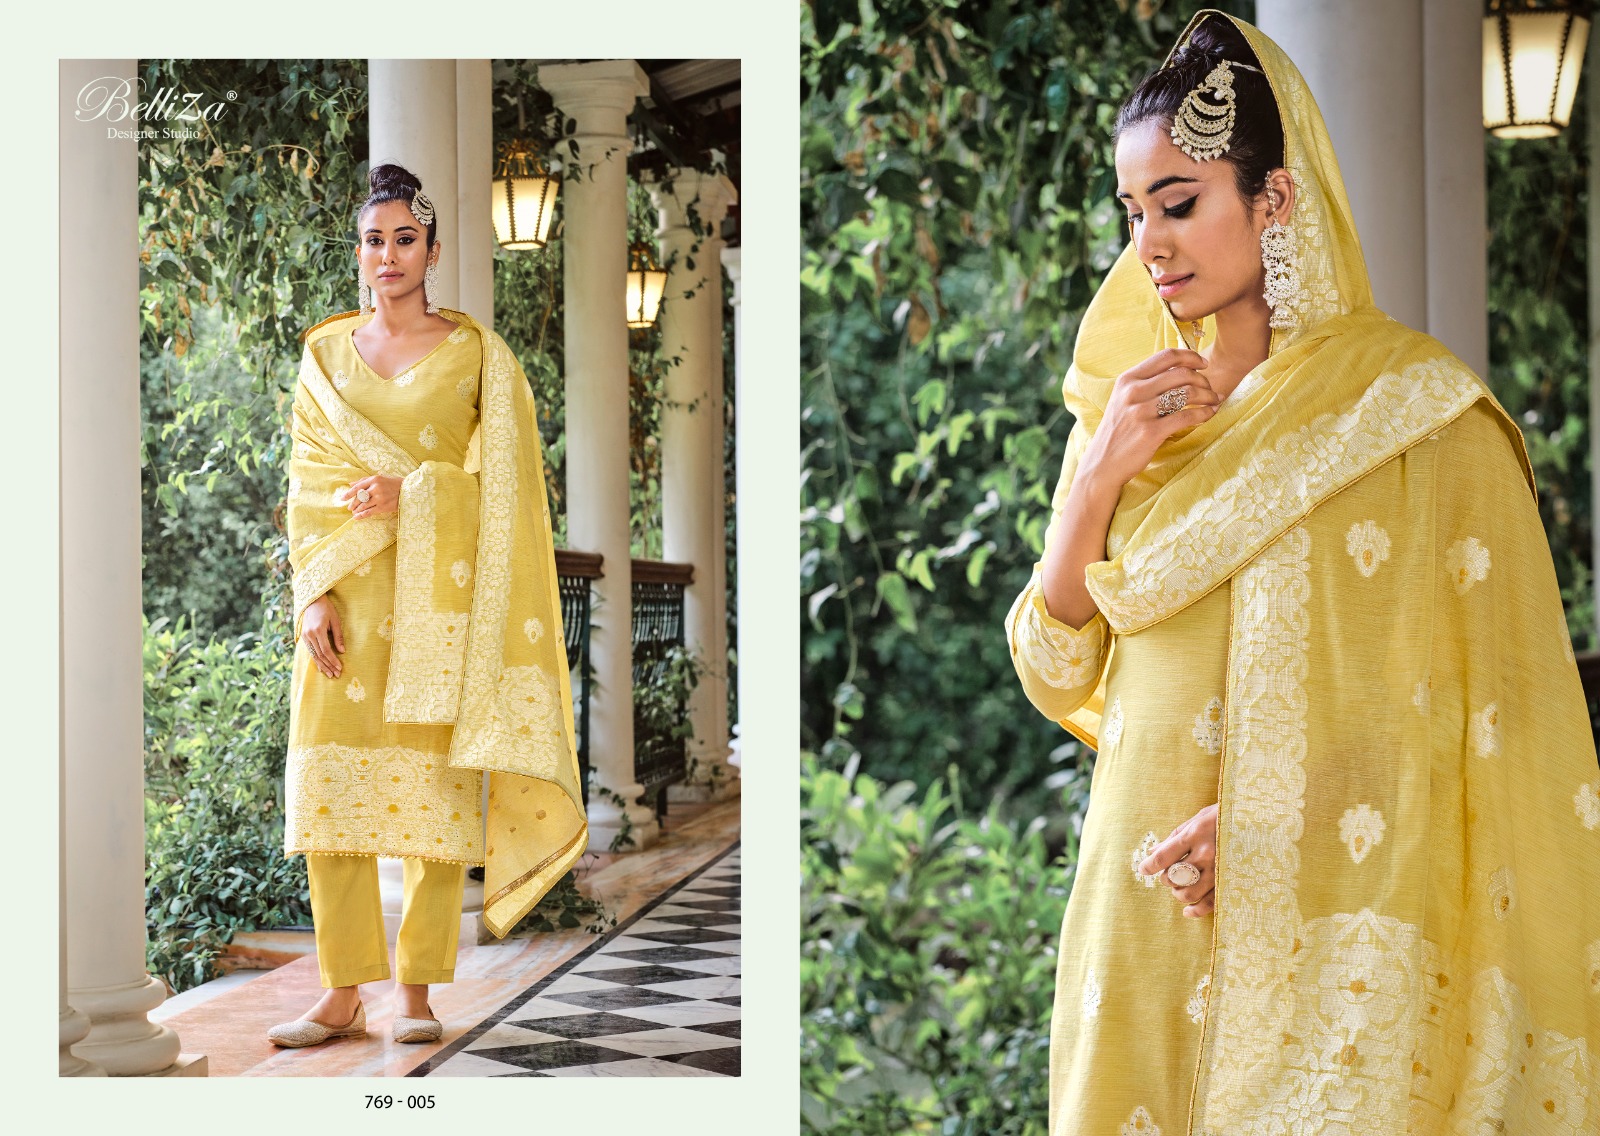 beliza designer studio Zeenat cotton elegant salwar suit catalog